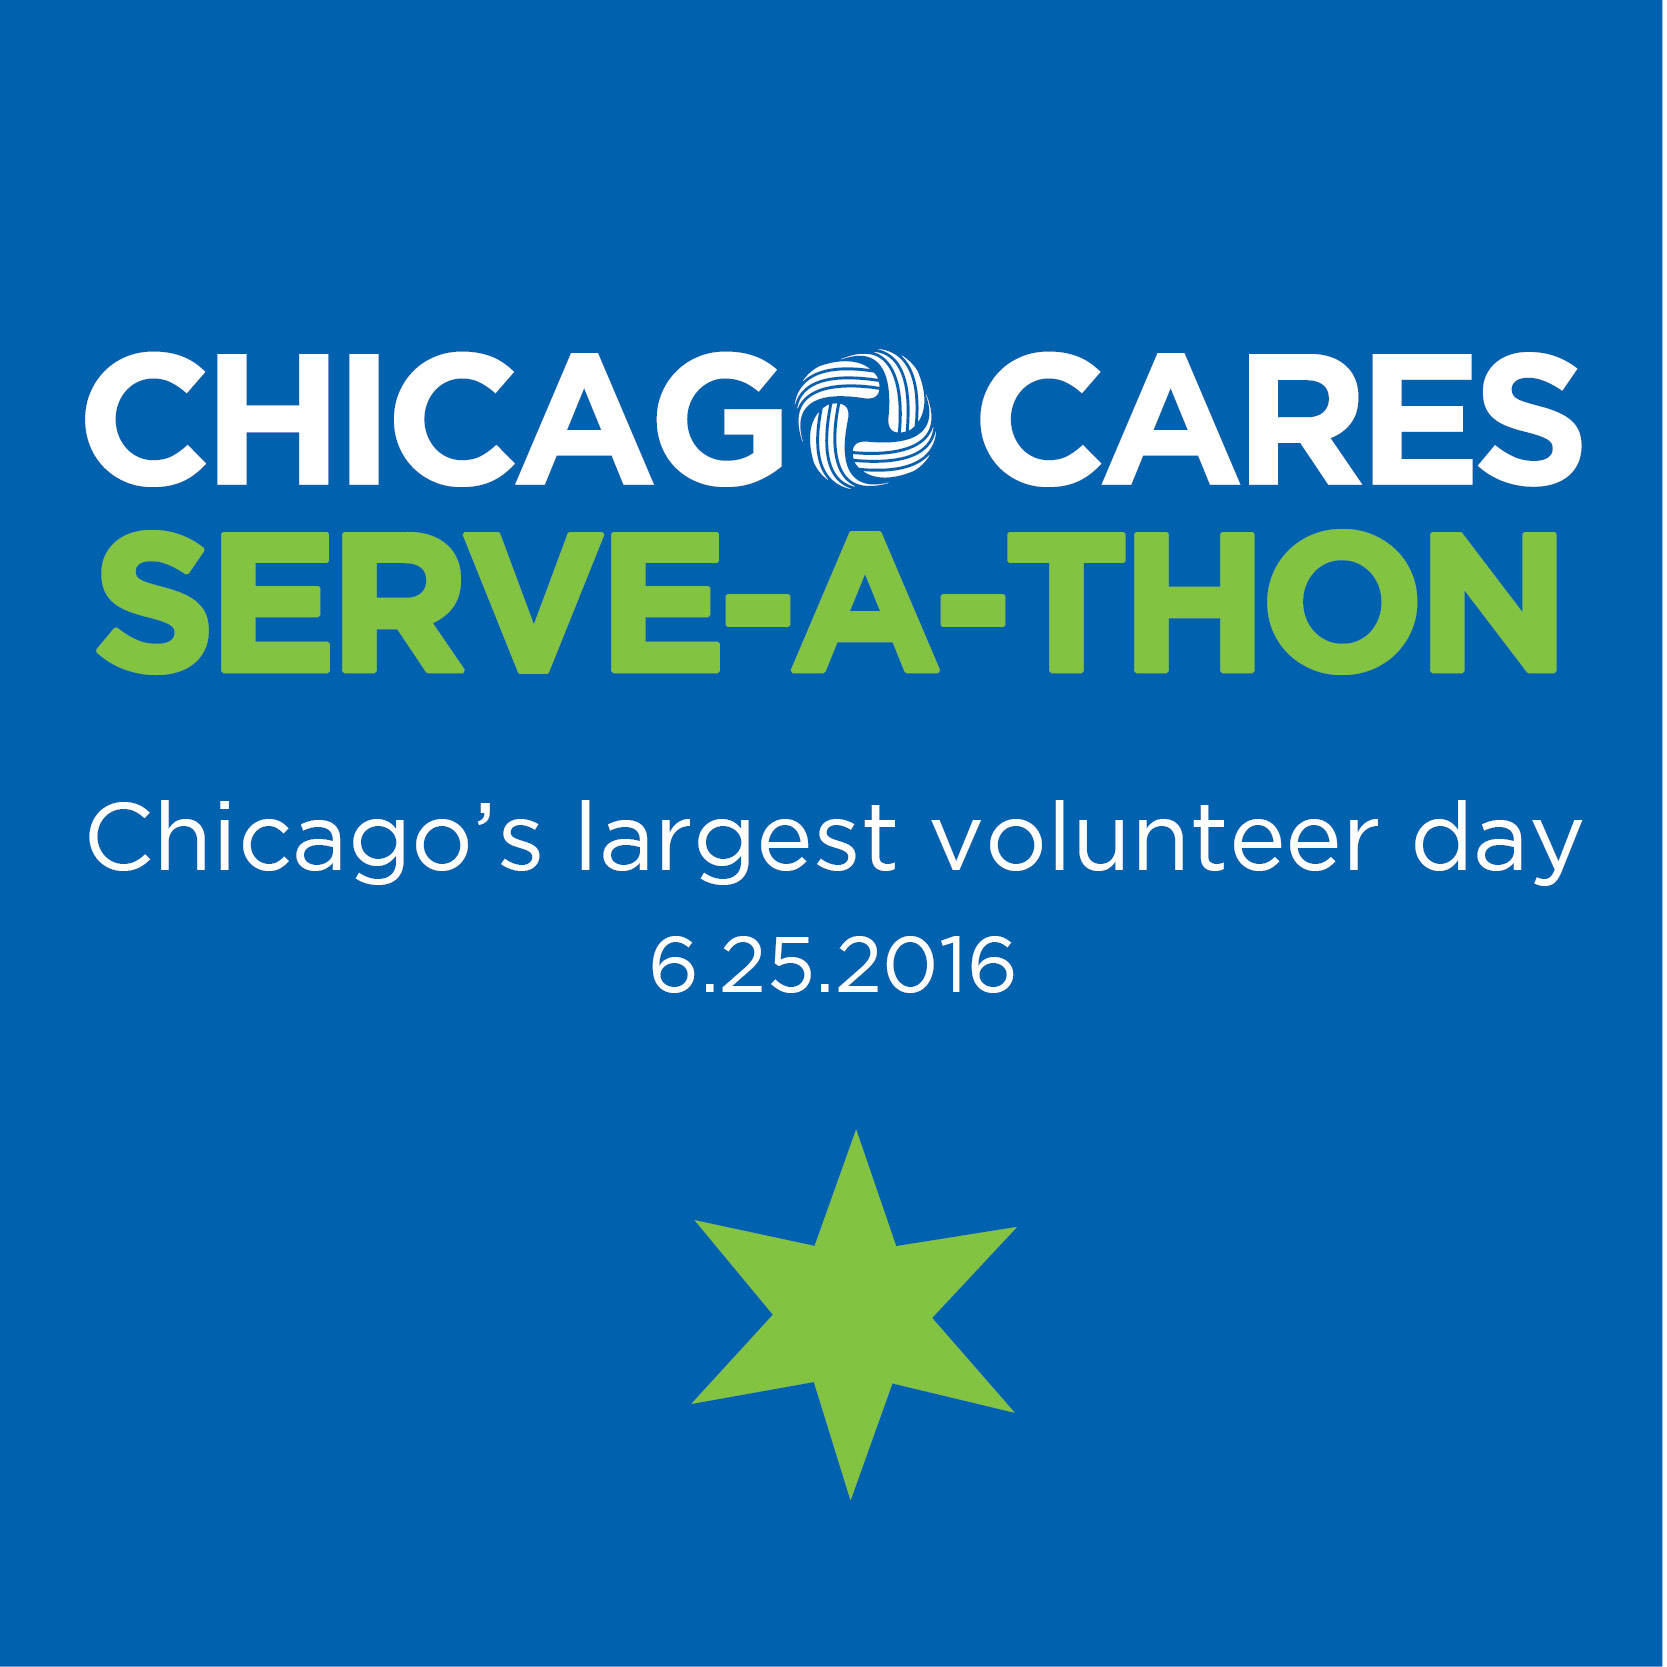 Chicago Cares Serve-a-thon